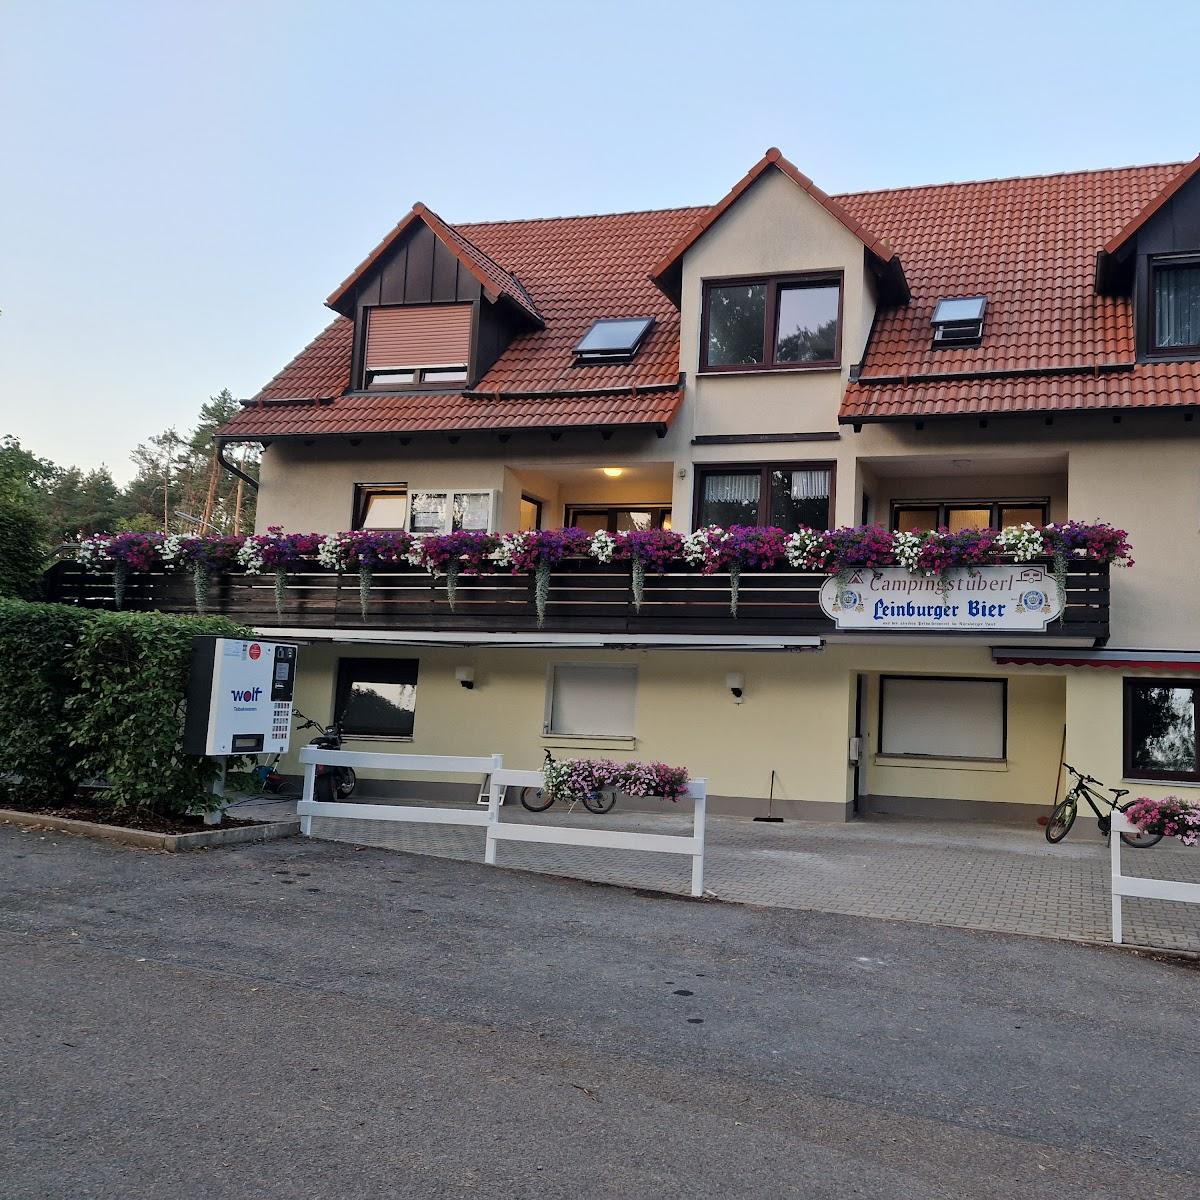 Restaurant "Campingstüberl Heiligenmühle" in Leinburg